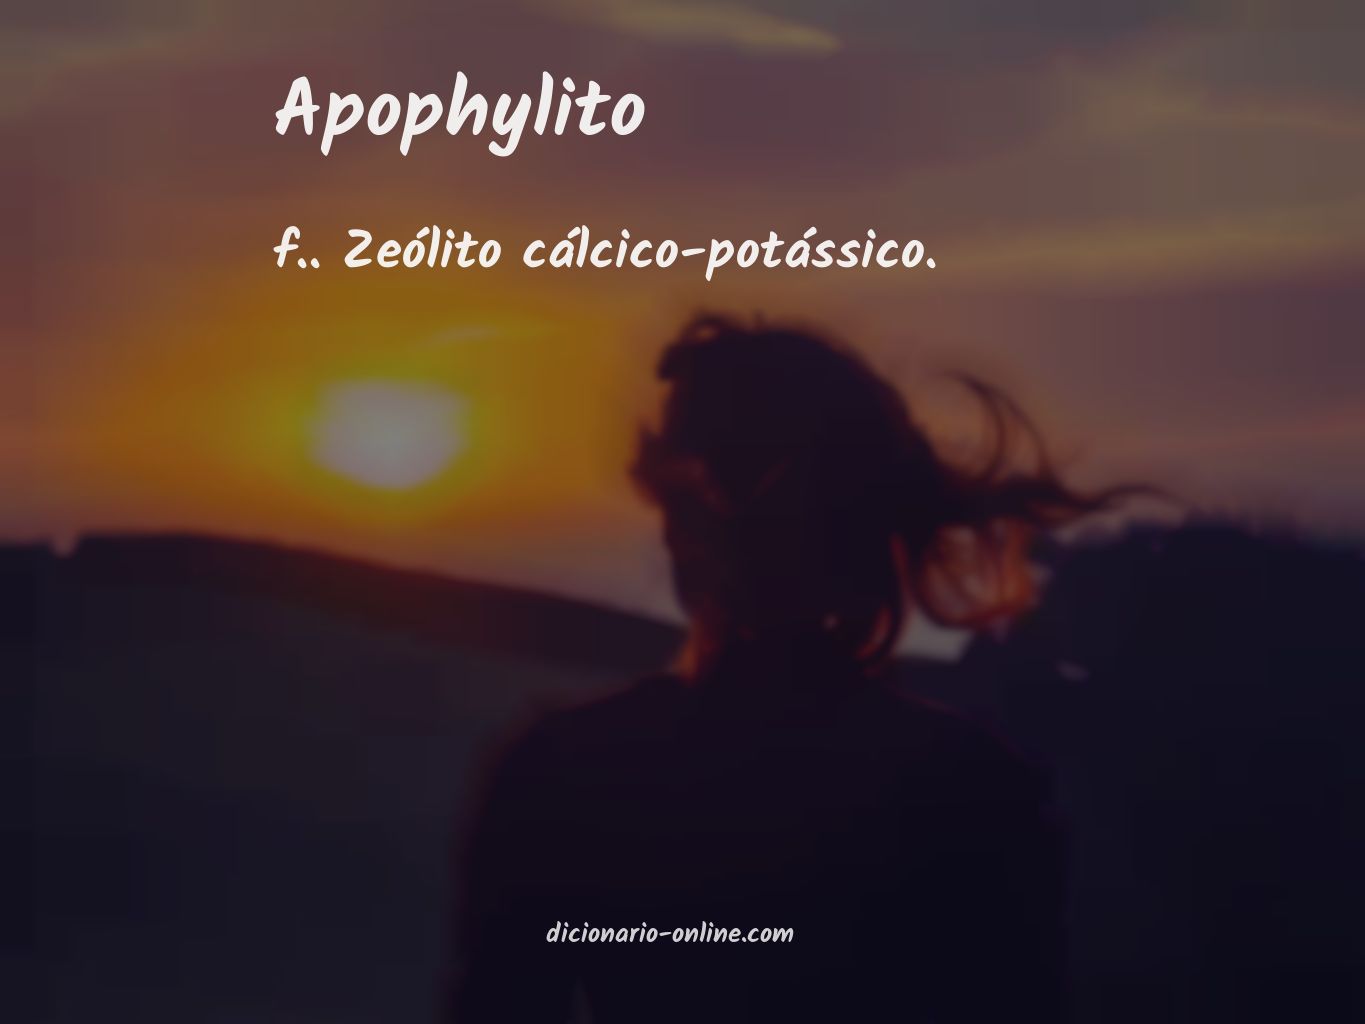 Significado de apophylito